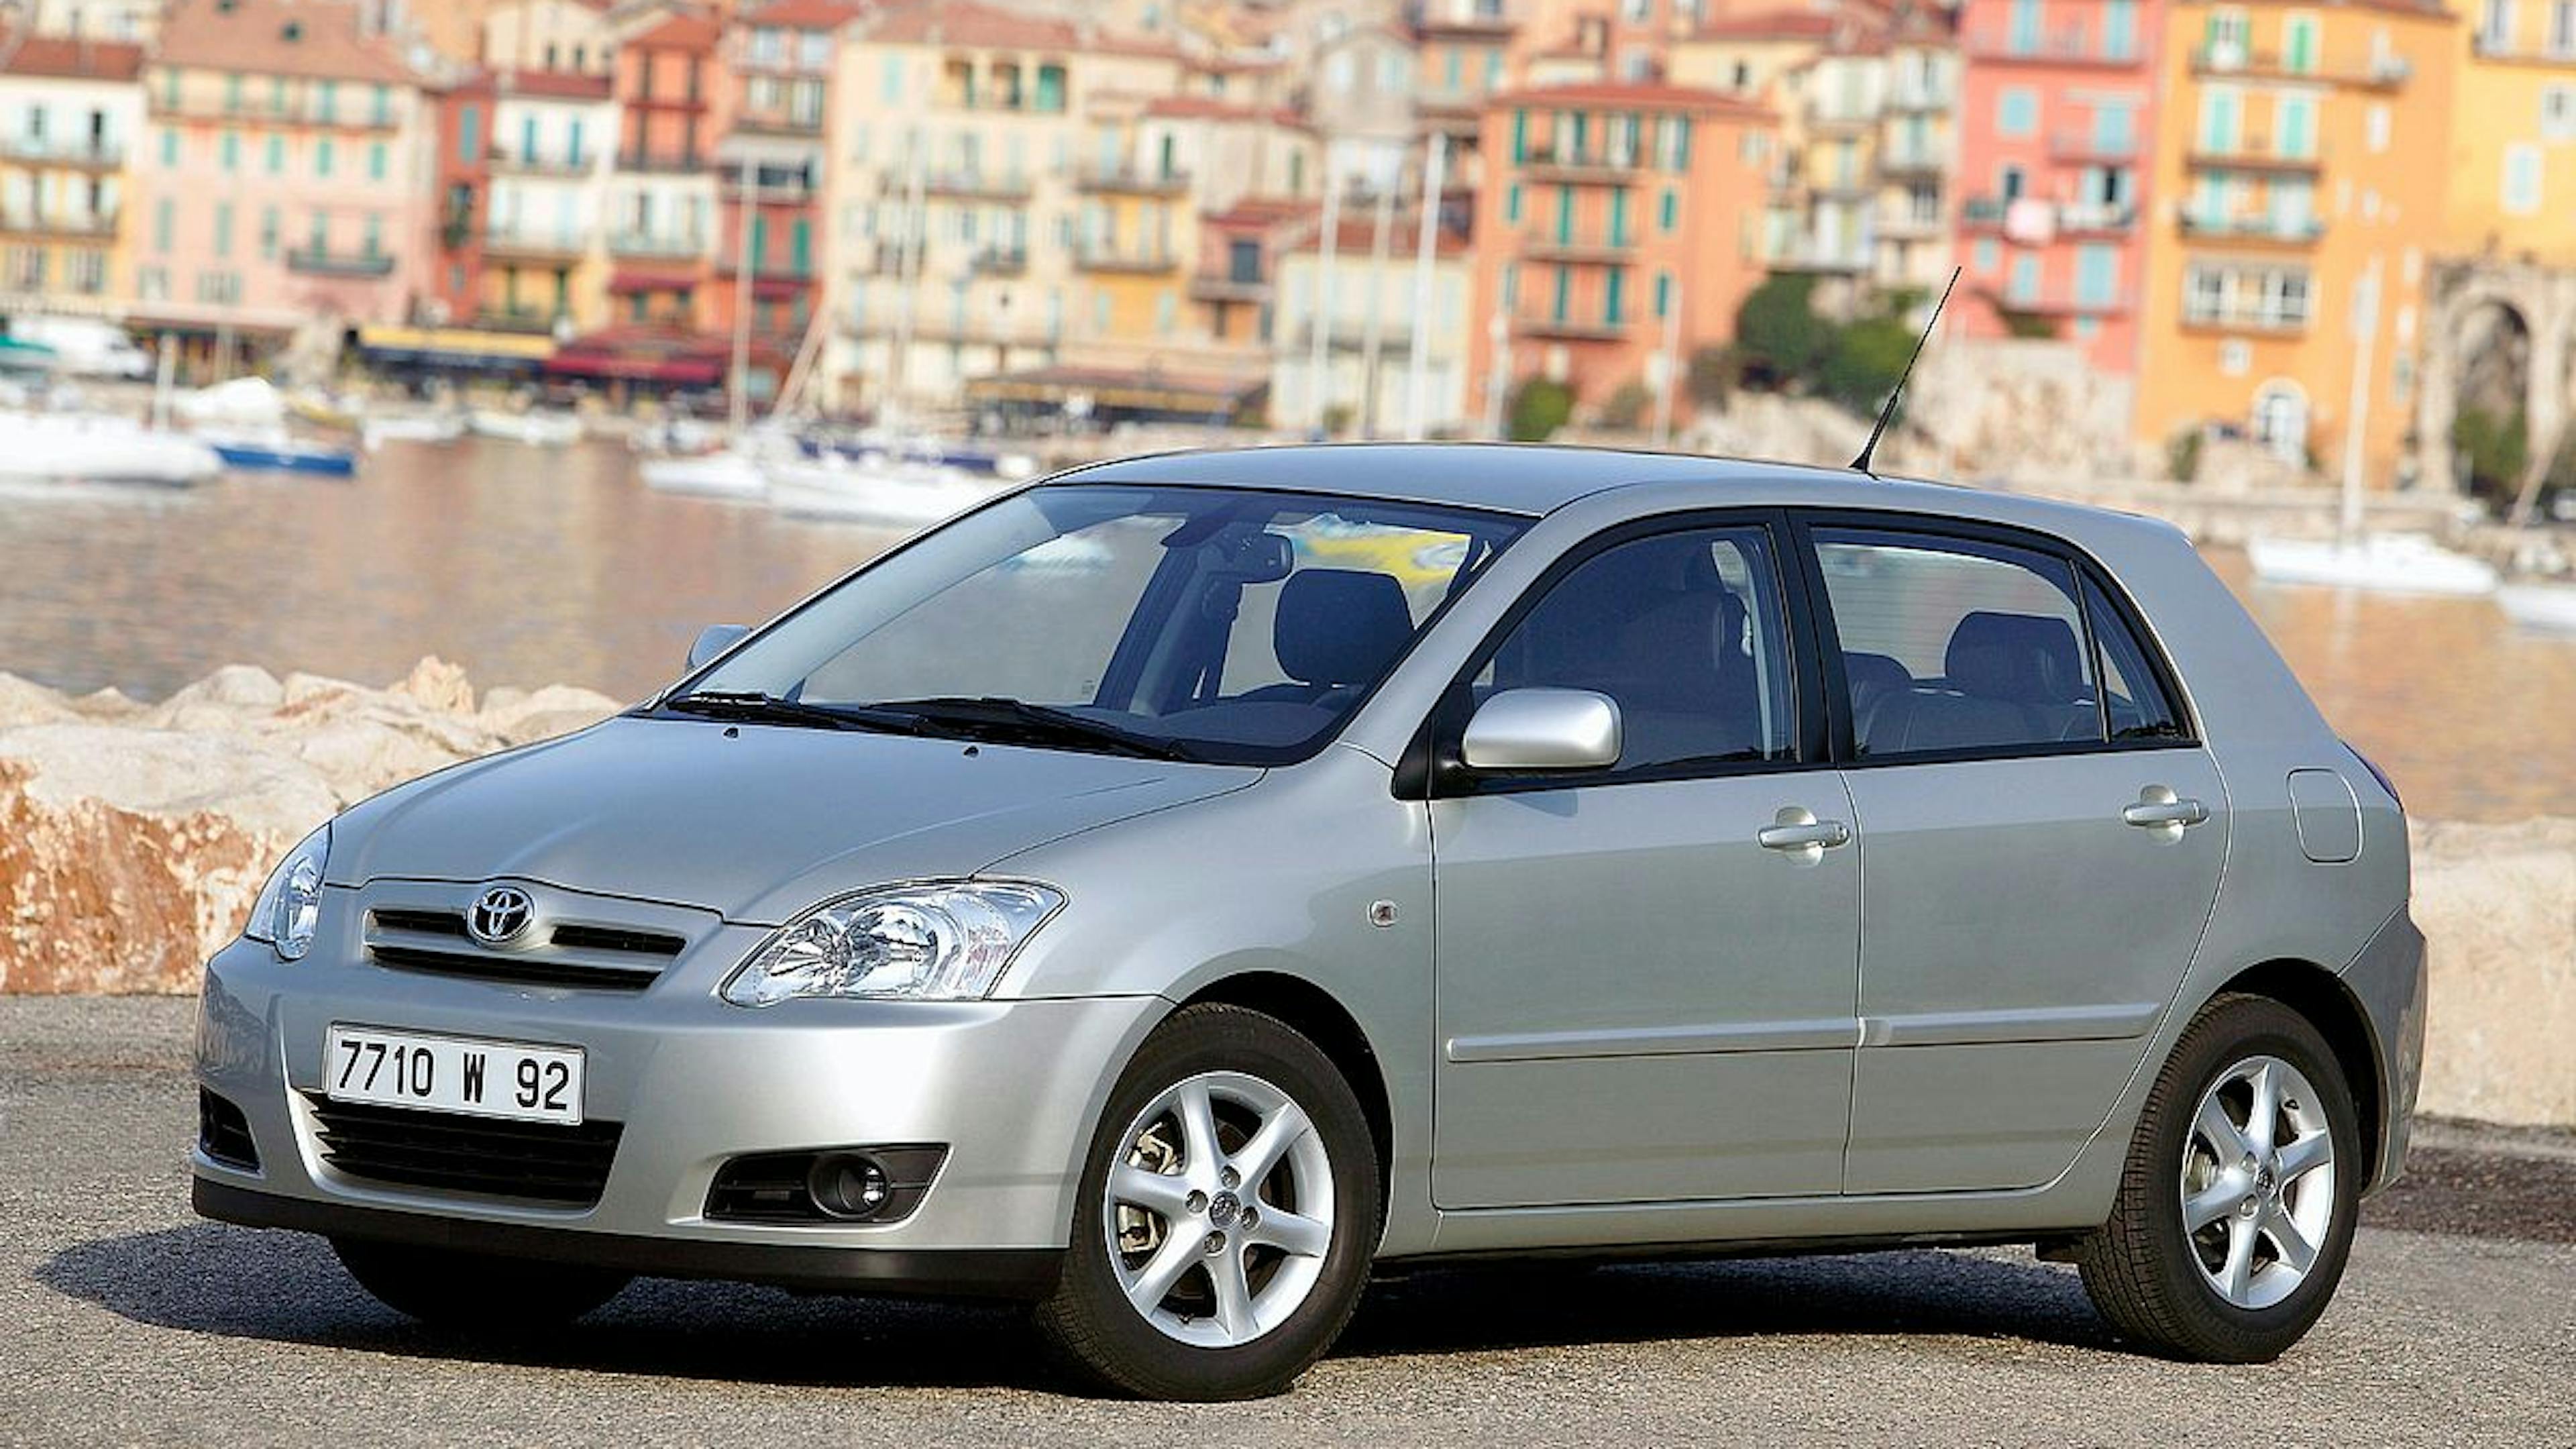 Ein silberner Toyota Corolla steht vor einer mediterranen Stadtkulisse